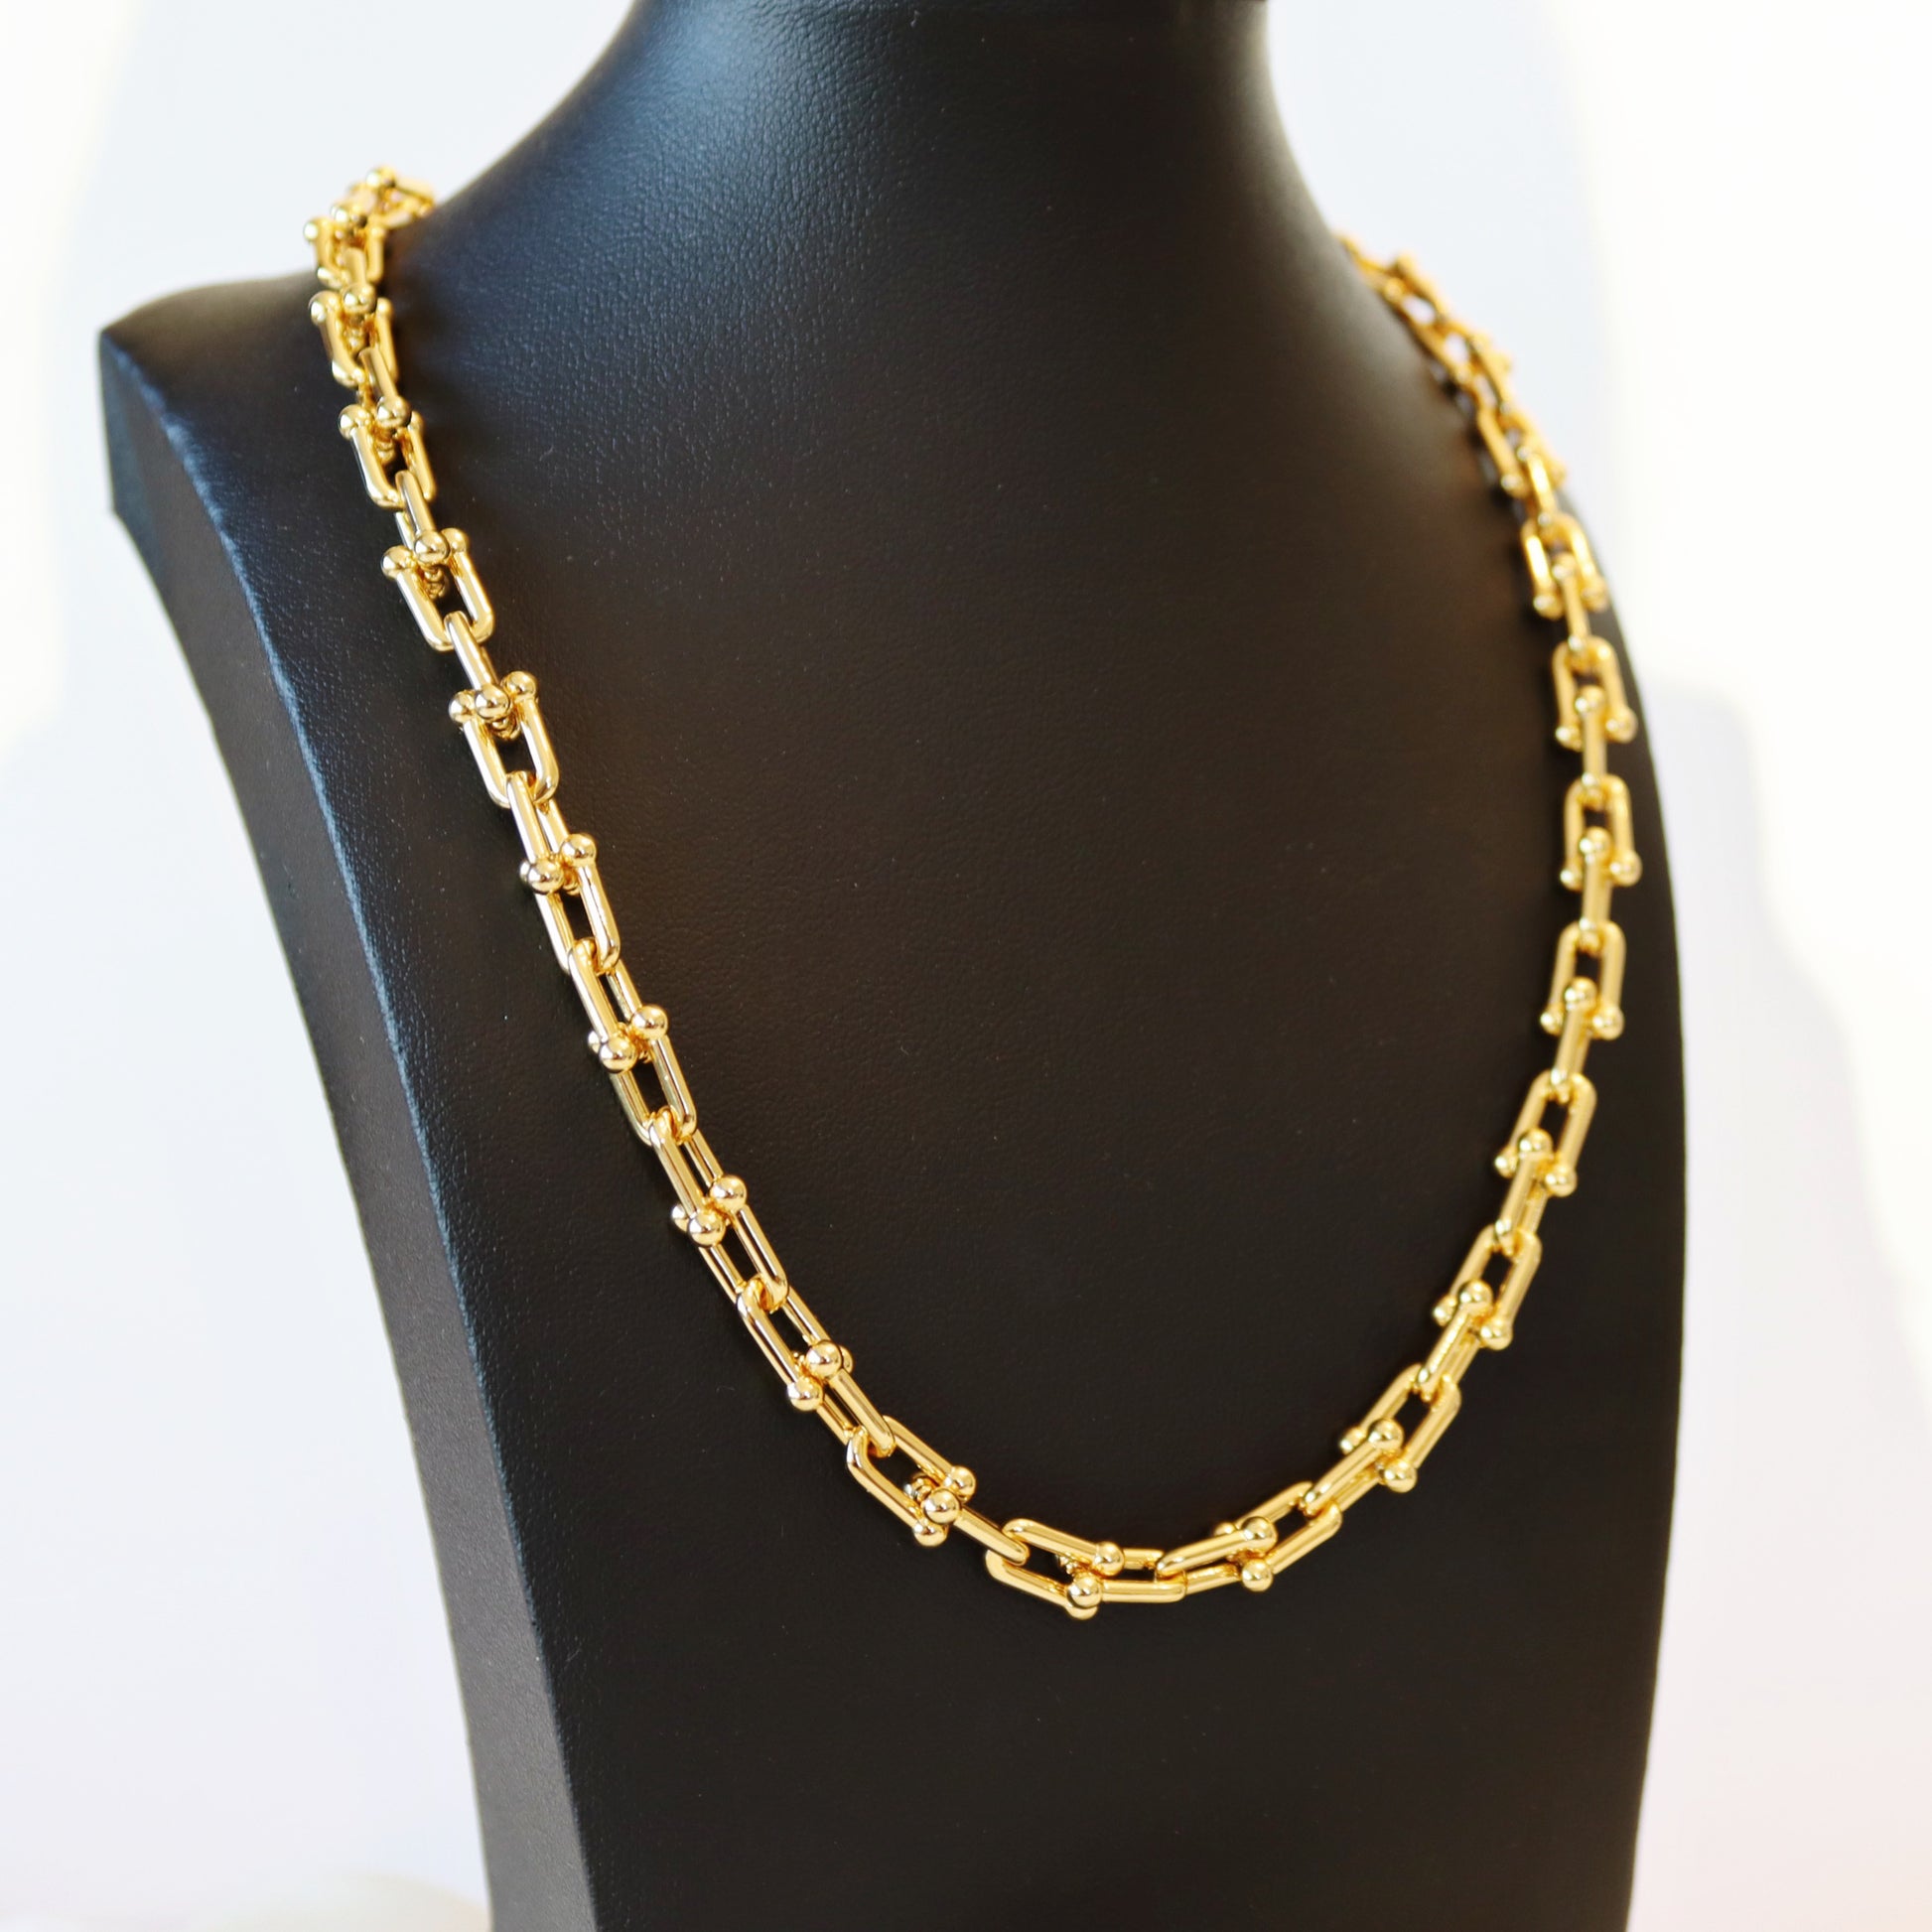 Interlocking Tiff Design Necklace - Kalopsia Accessories